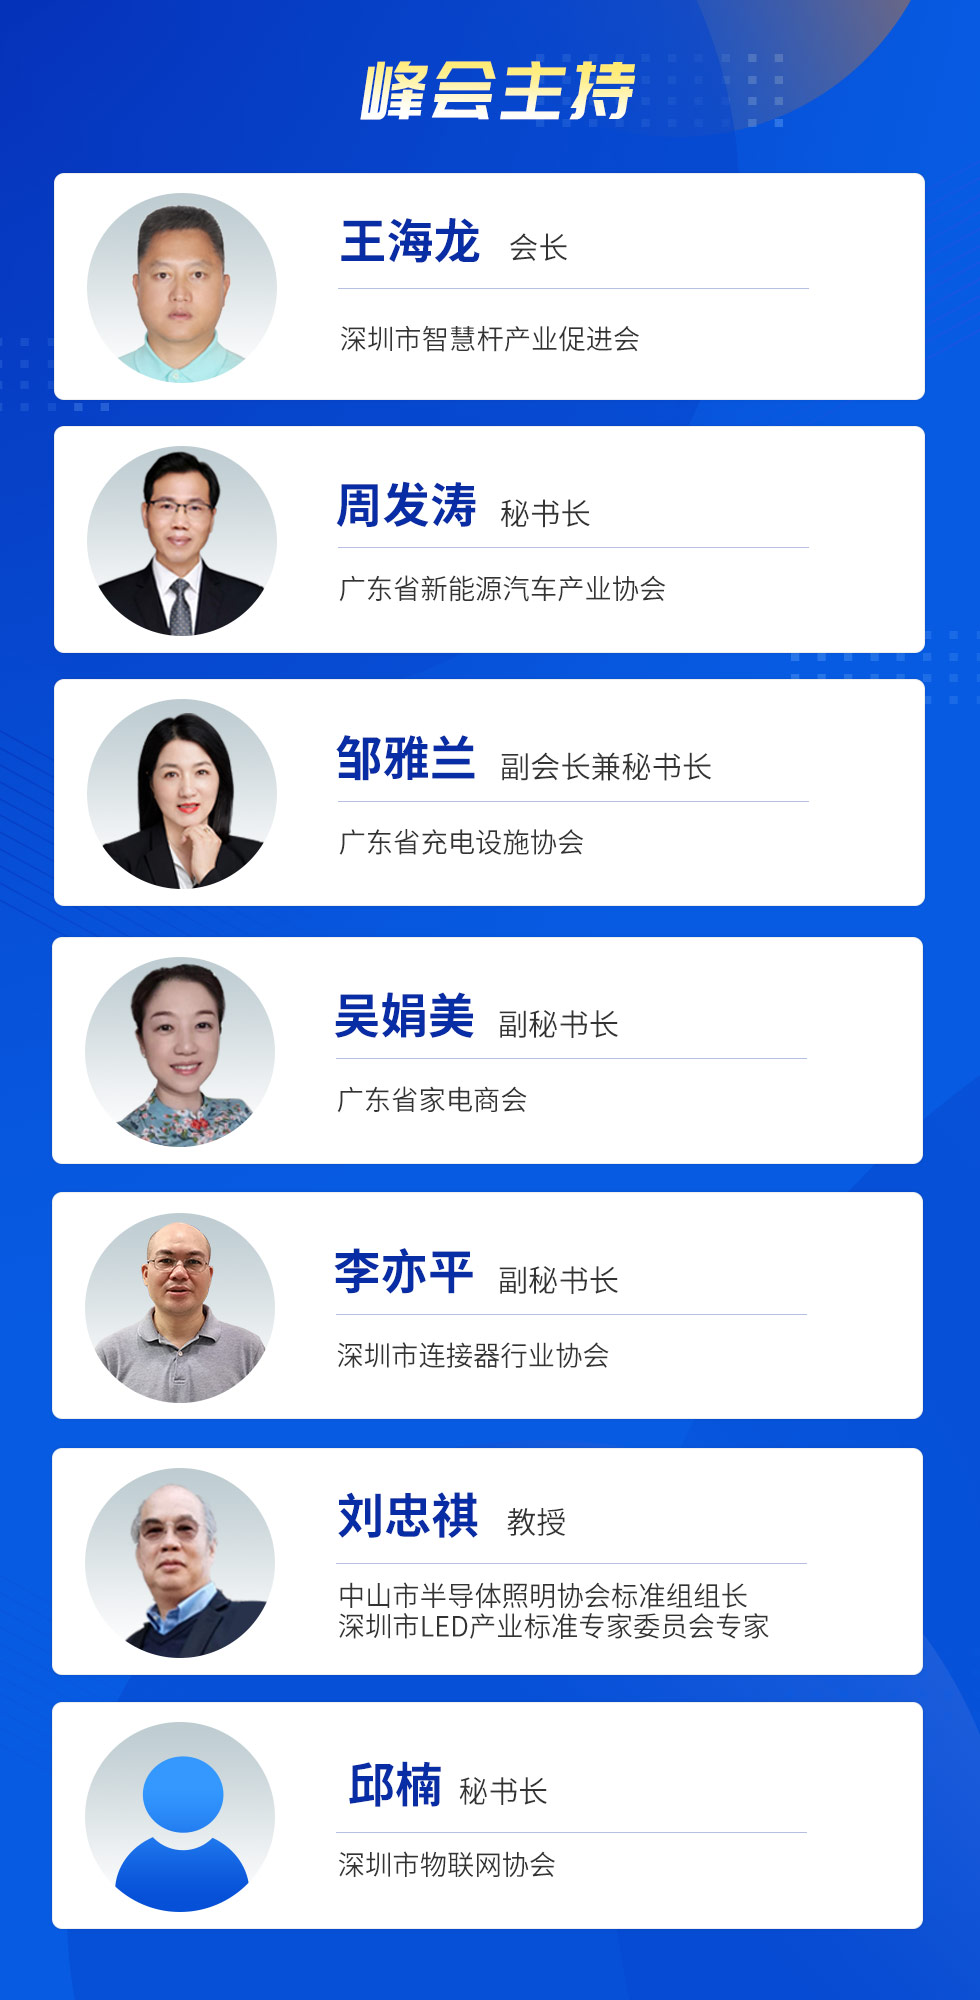 中國電子熱點解決方案峰會|40+專家共話5G鋰電池/超充/AIoT與智能家居